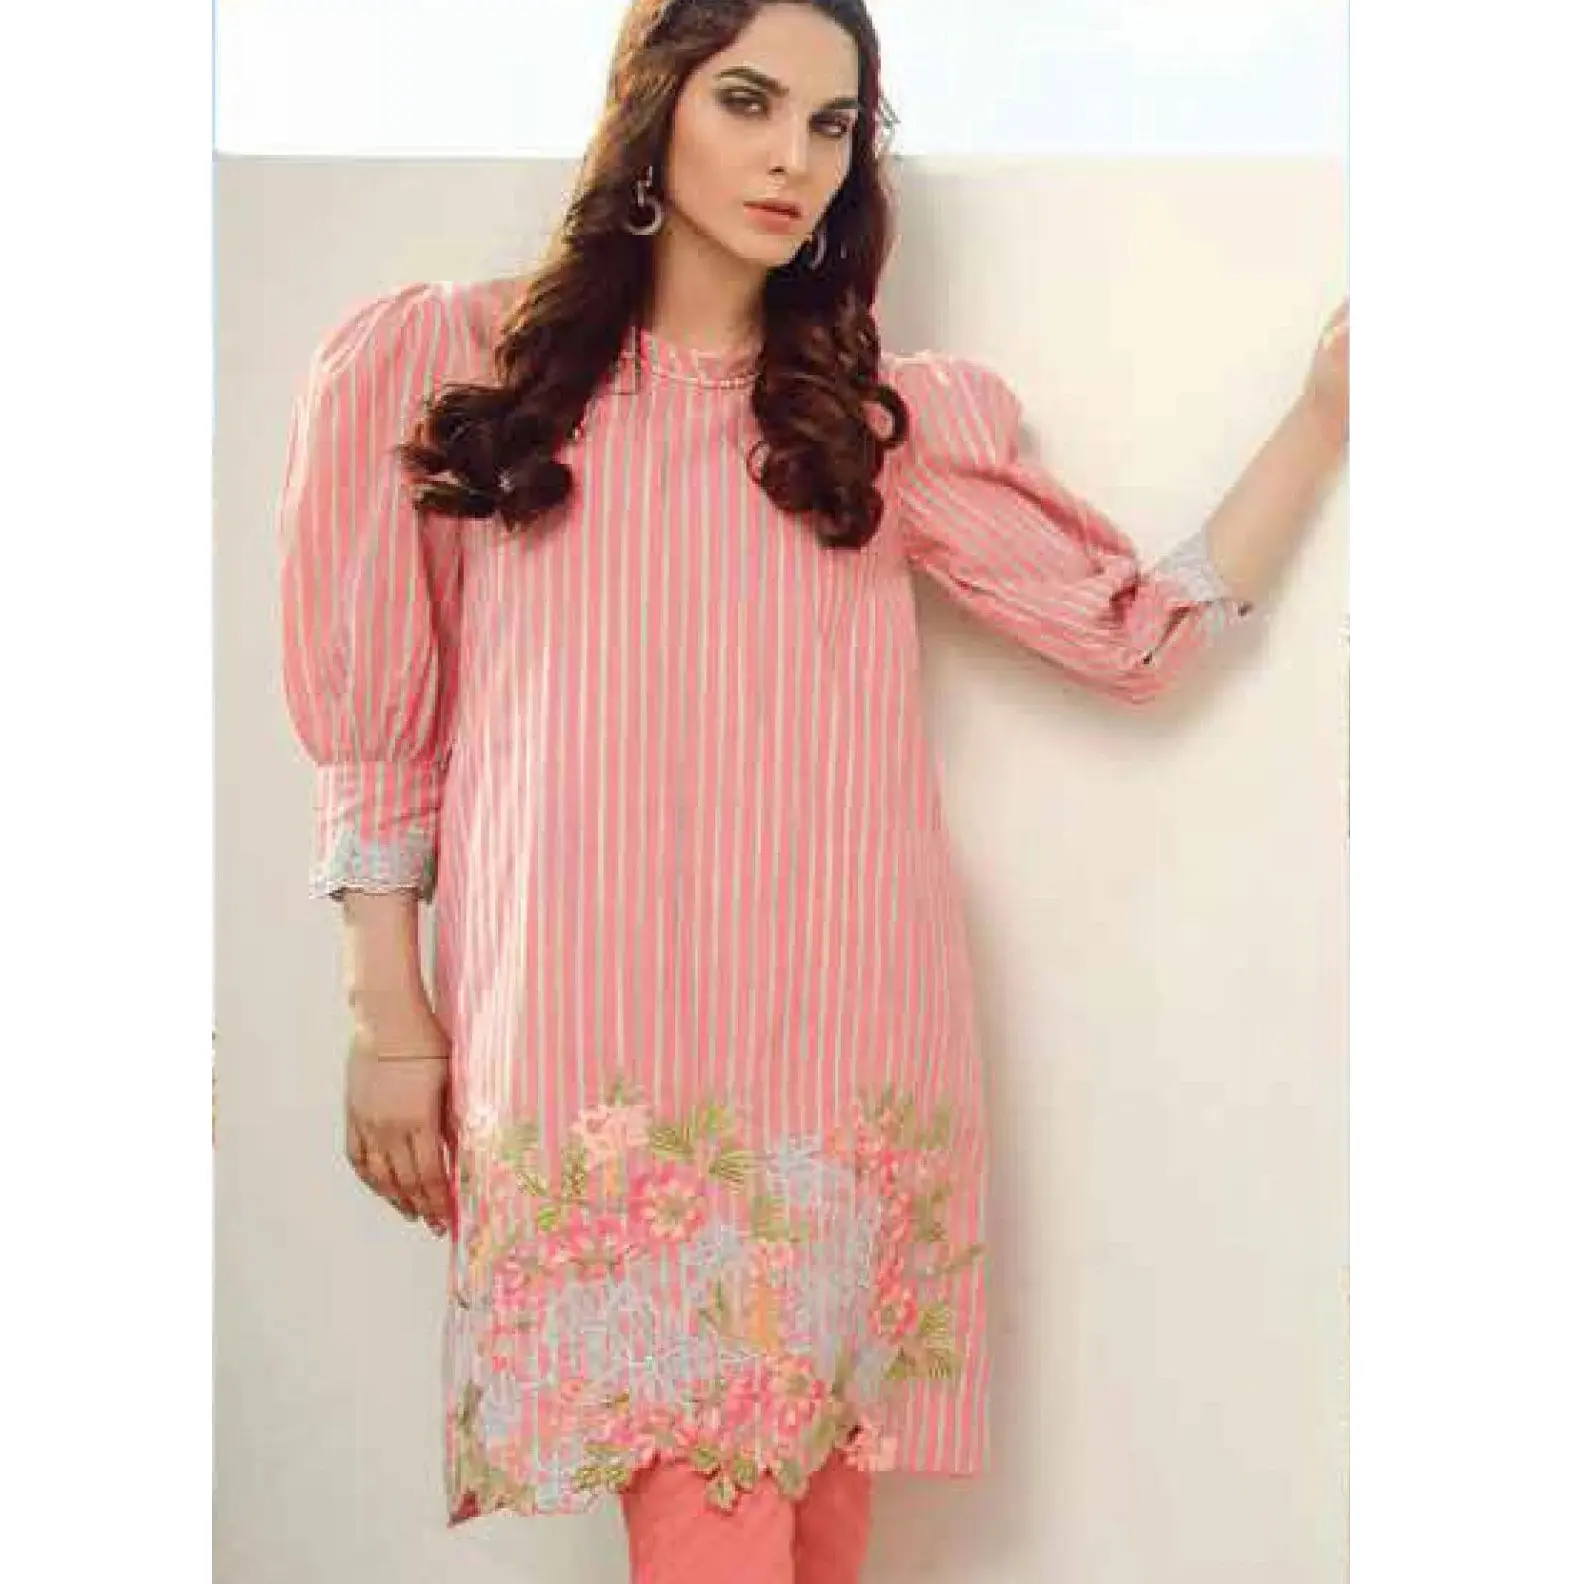 Yeni rahat çim elbise pakistanlı yeni tasarım sıcak satış güzel renk salwar kameez kurta uzun churidar